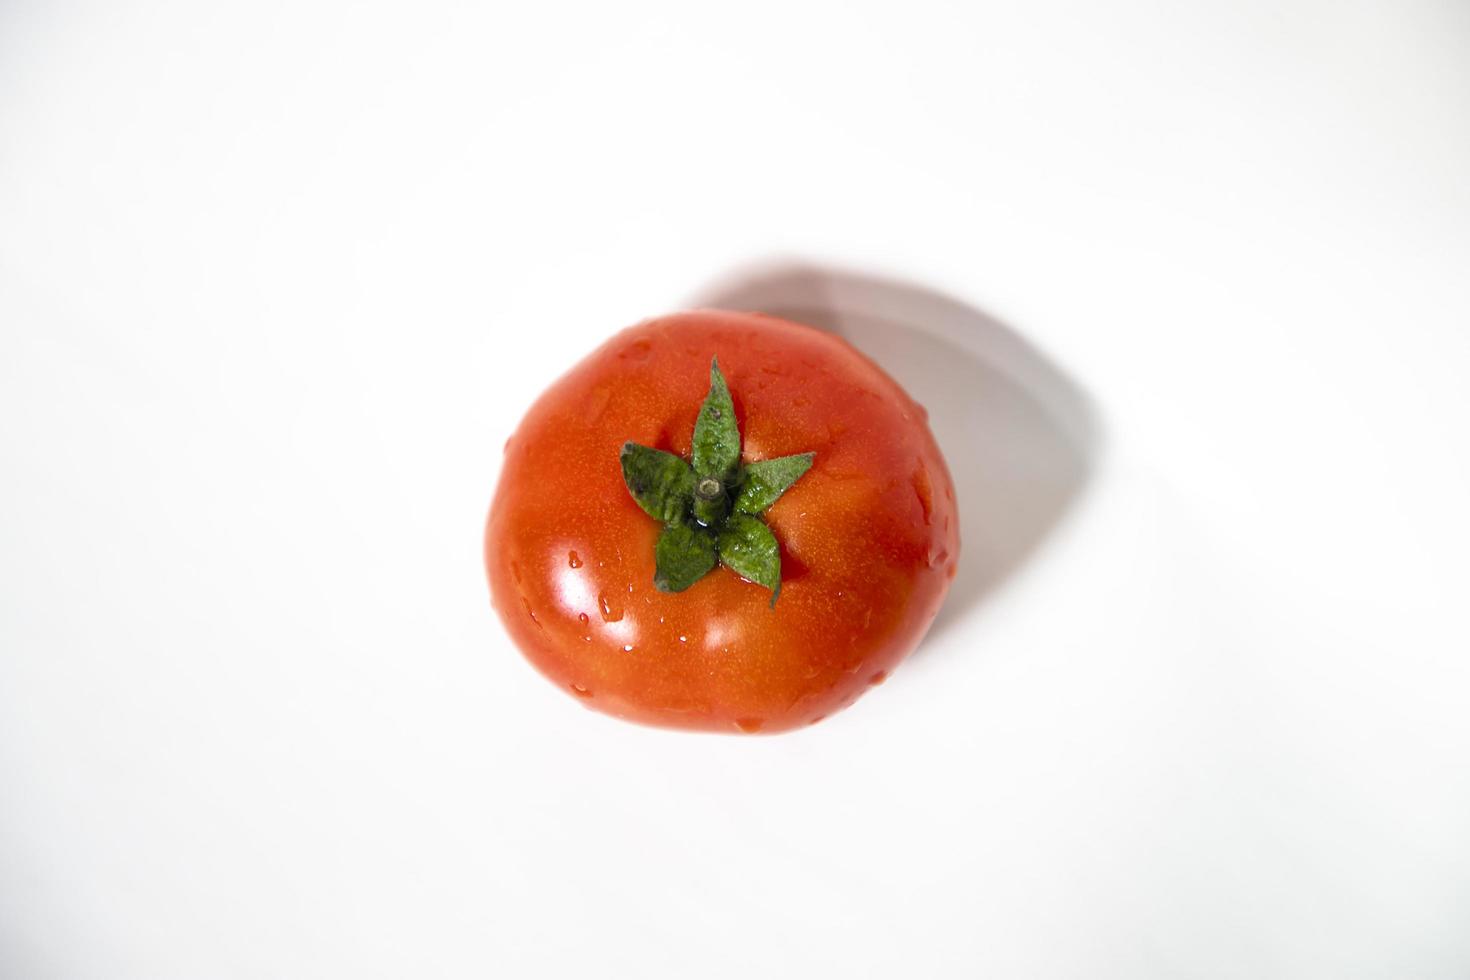 tomate maduro vermelho fresco isolado no fundo. salada de vegetais saudável orgânica crua natural foto